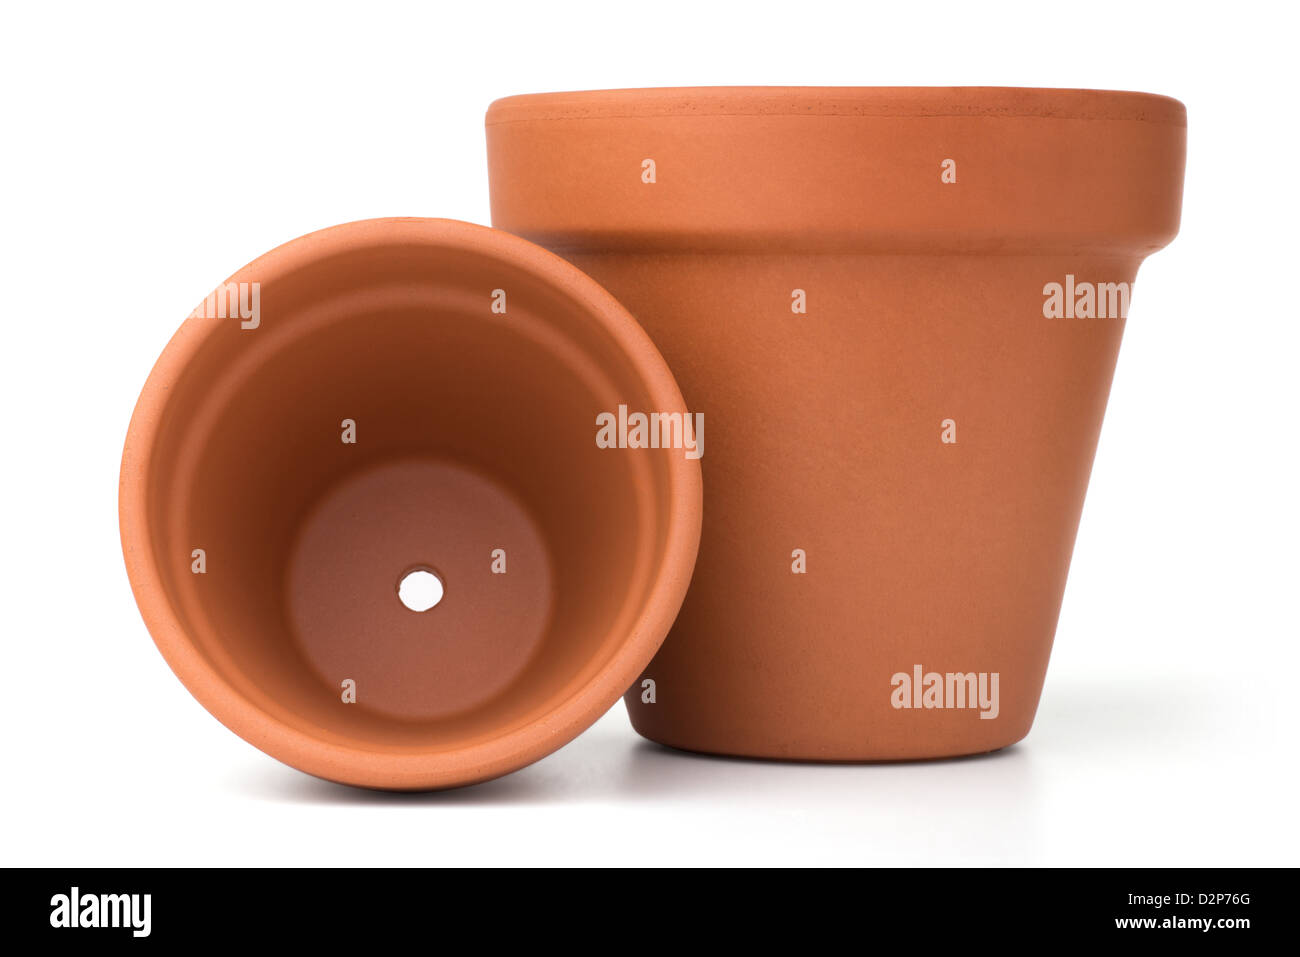 Giardinaggio: gruppo di vuoto ceramica vasi di fiori isolati su sfondo bianco Foto Stock